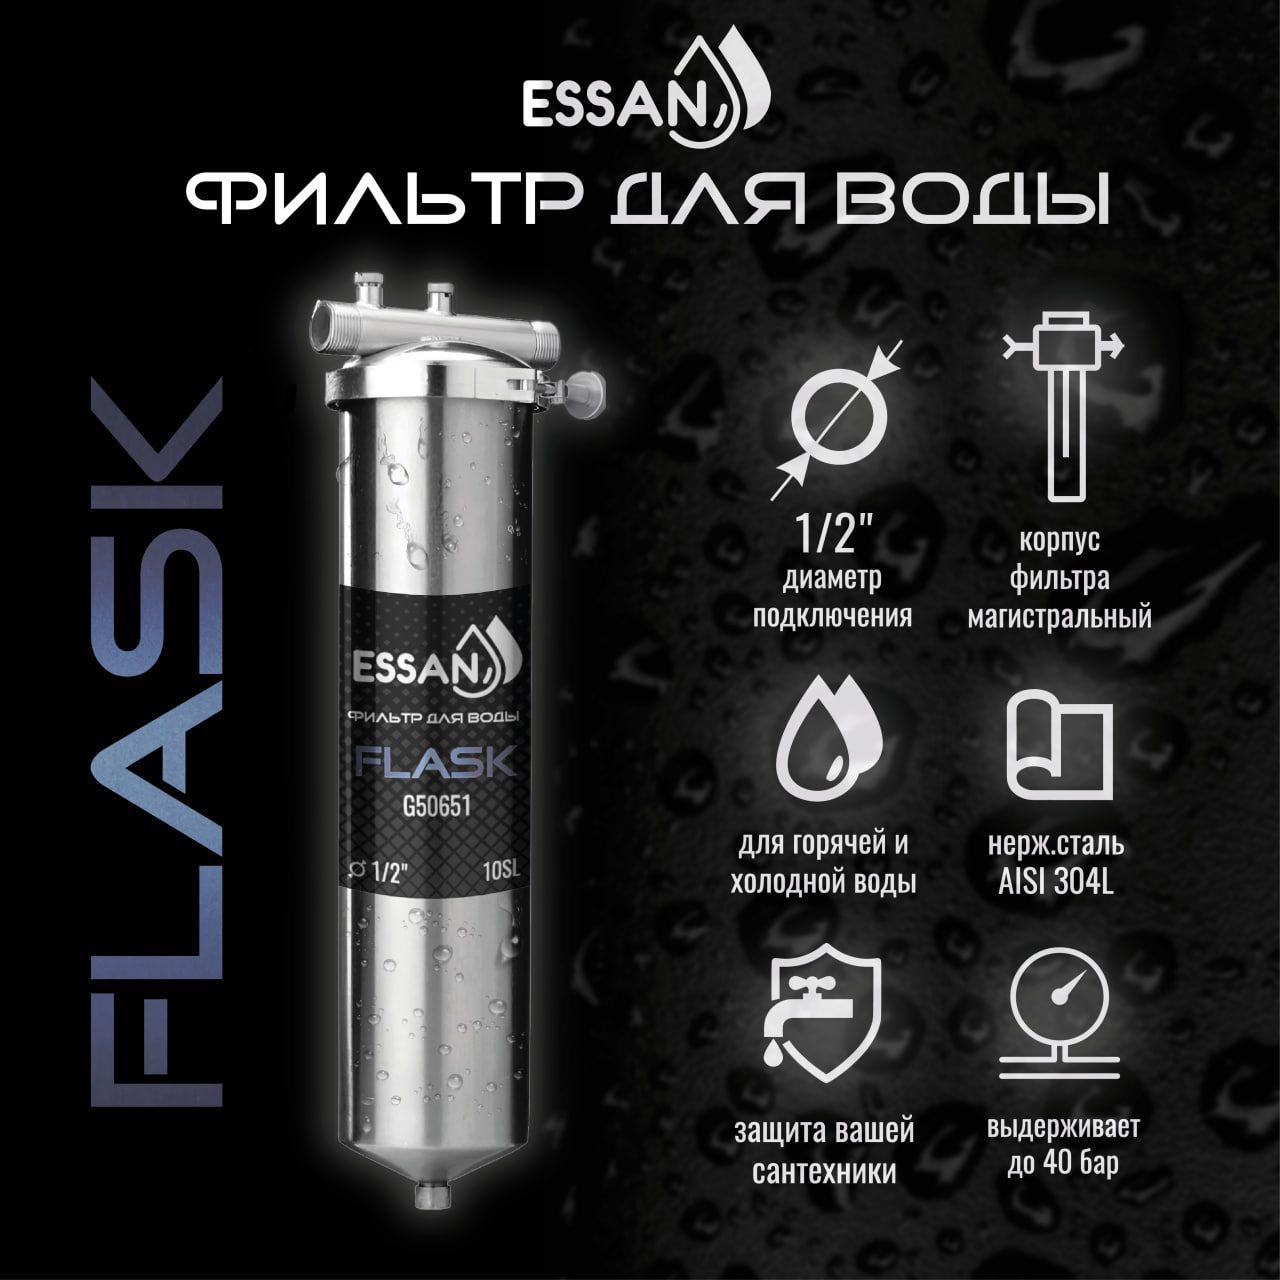 Фильтр колба проточная для магистрального водоснабжения ESSAN FLASK 10SL 1/2 H Slim Line